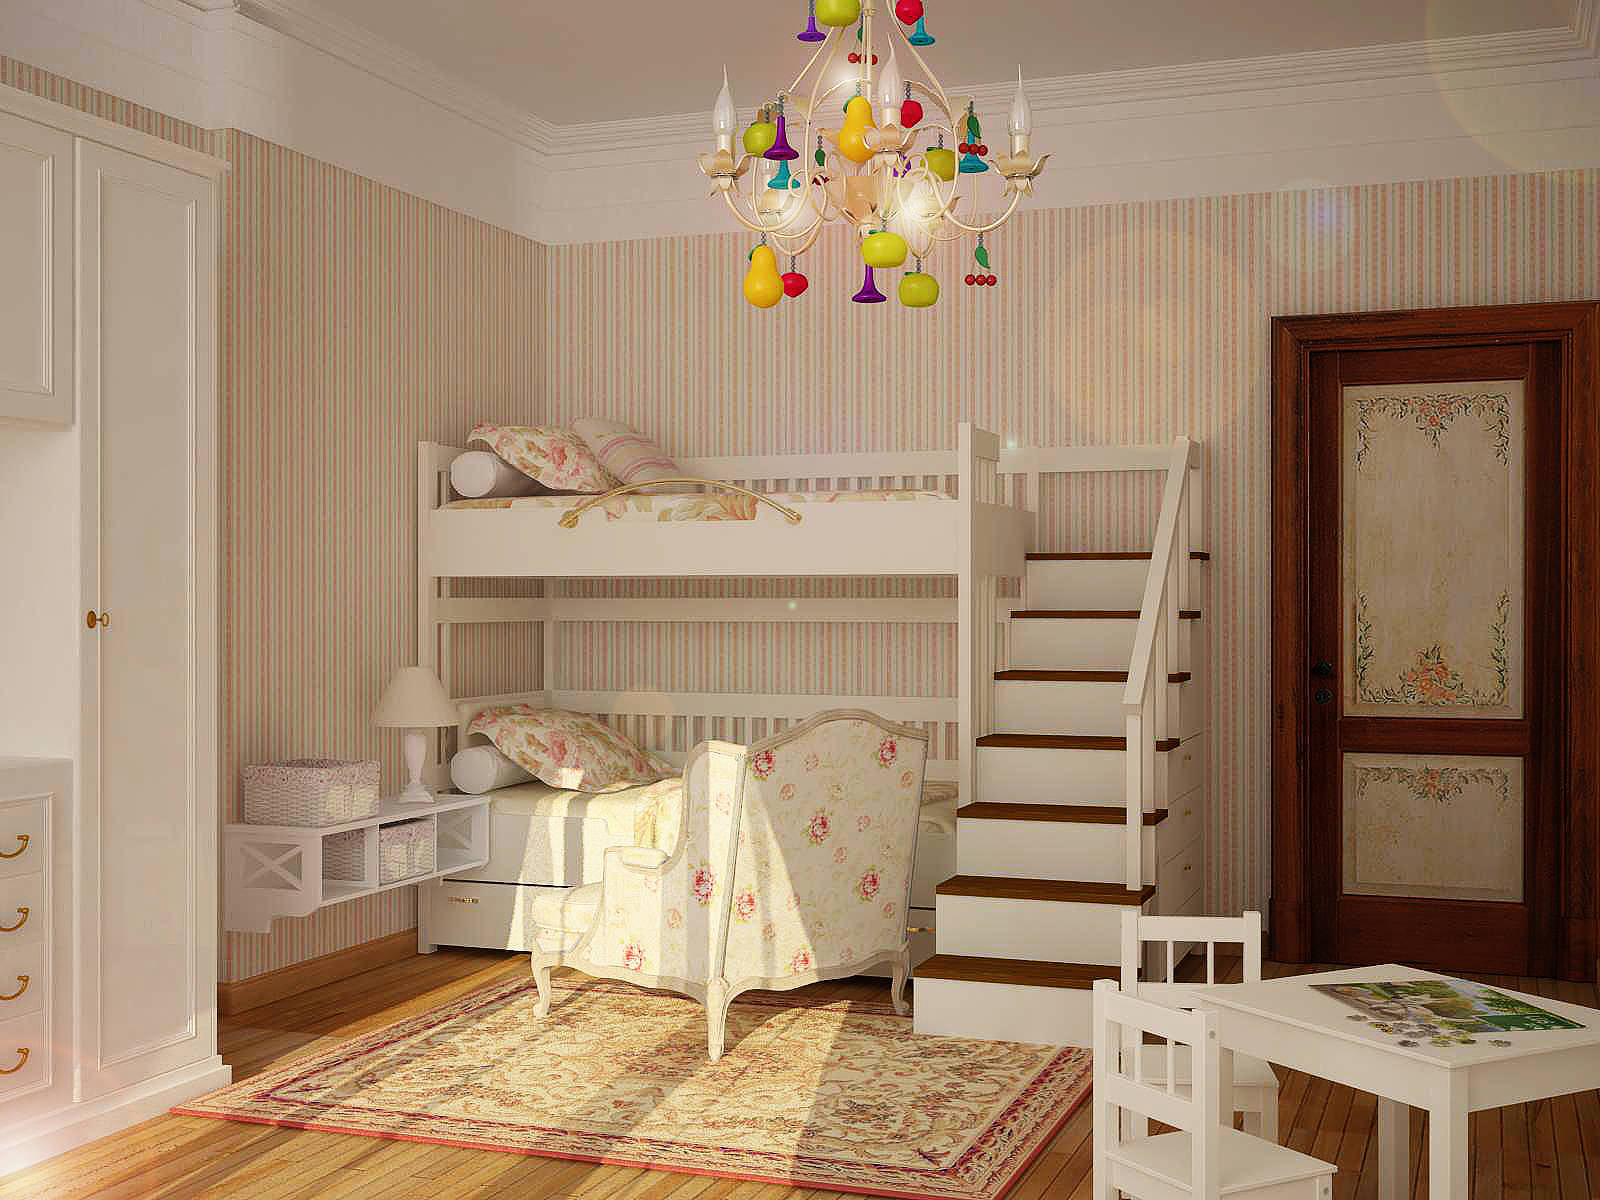 Дизайн детской комнаты для двоих детей